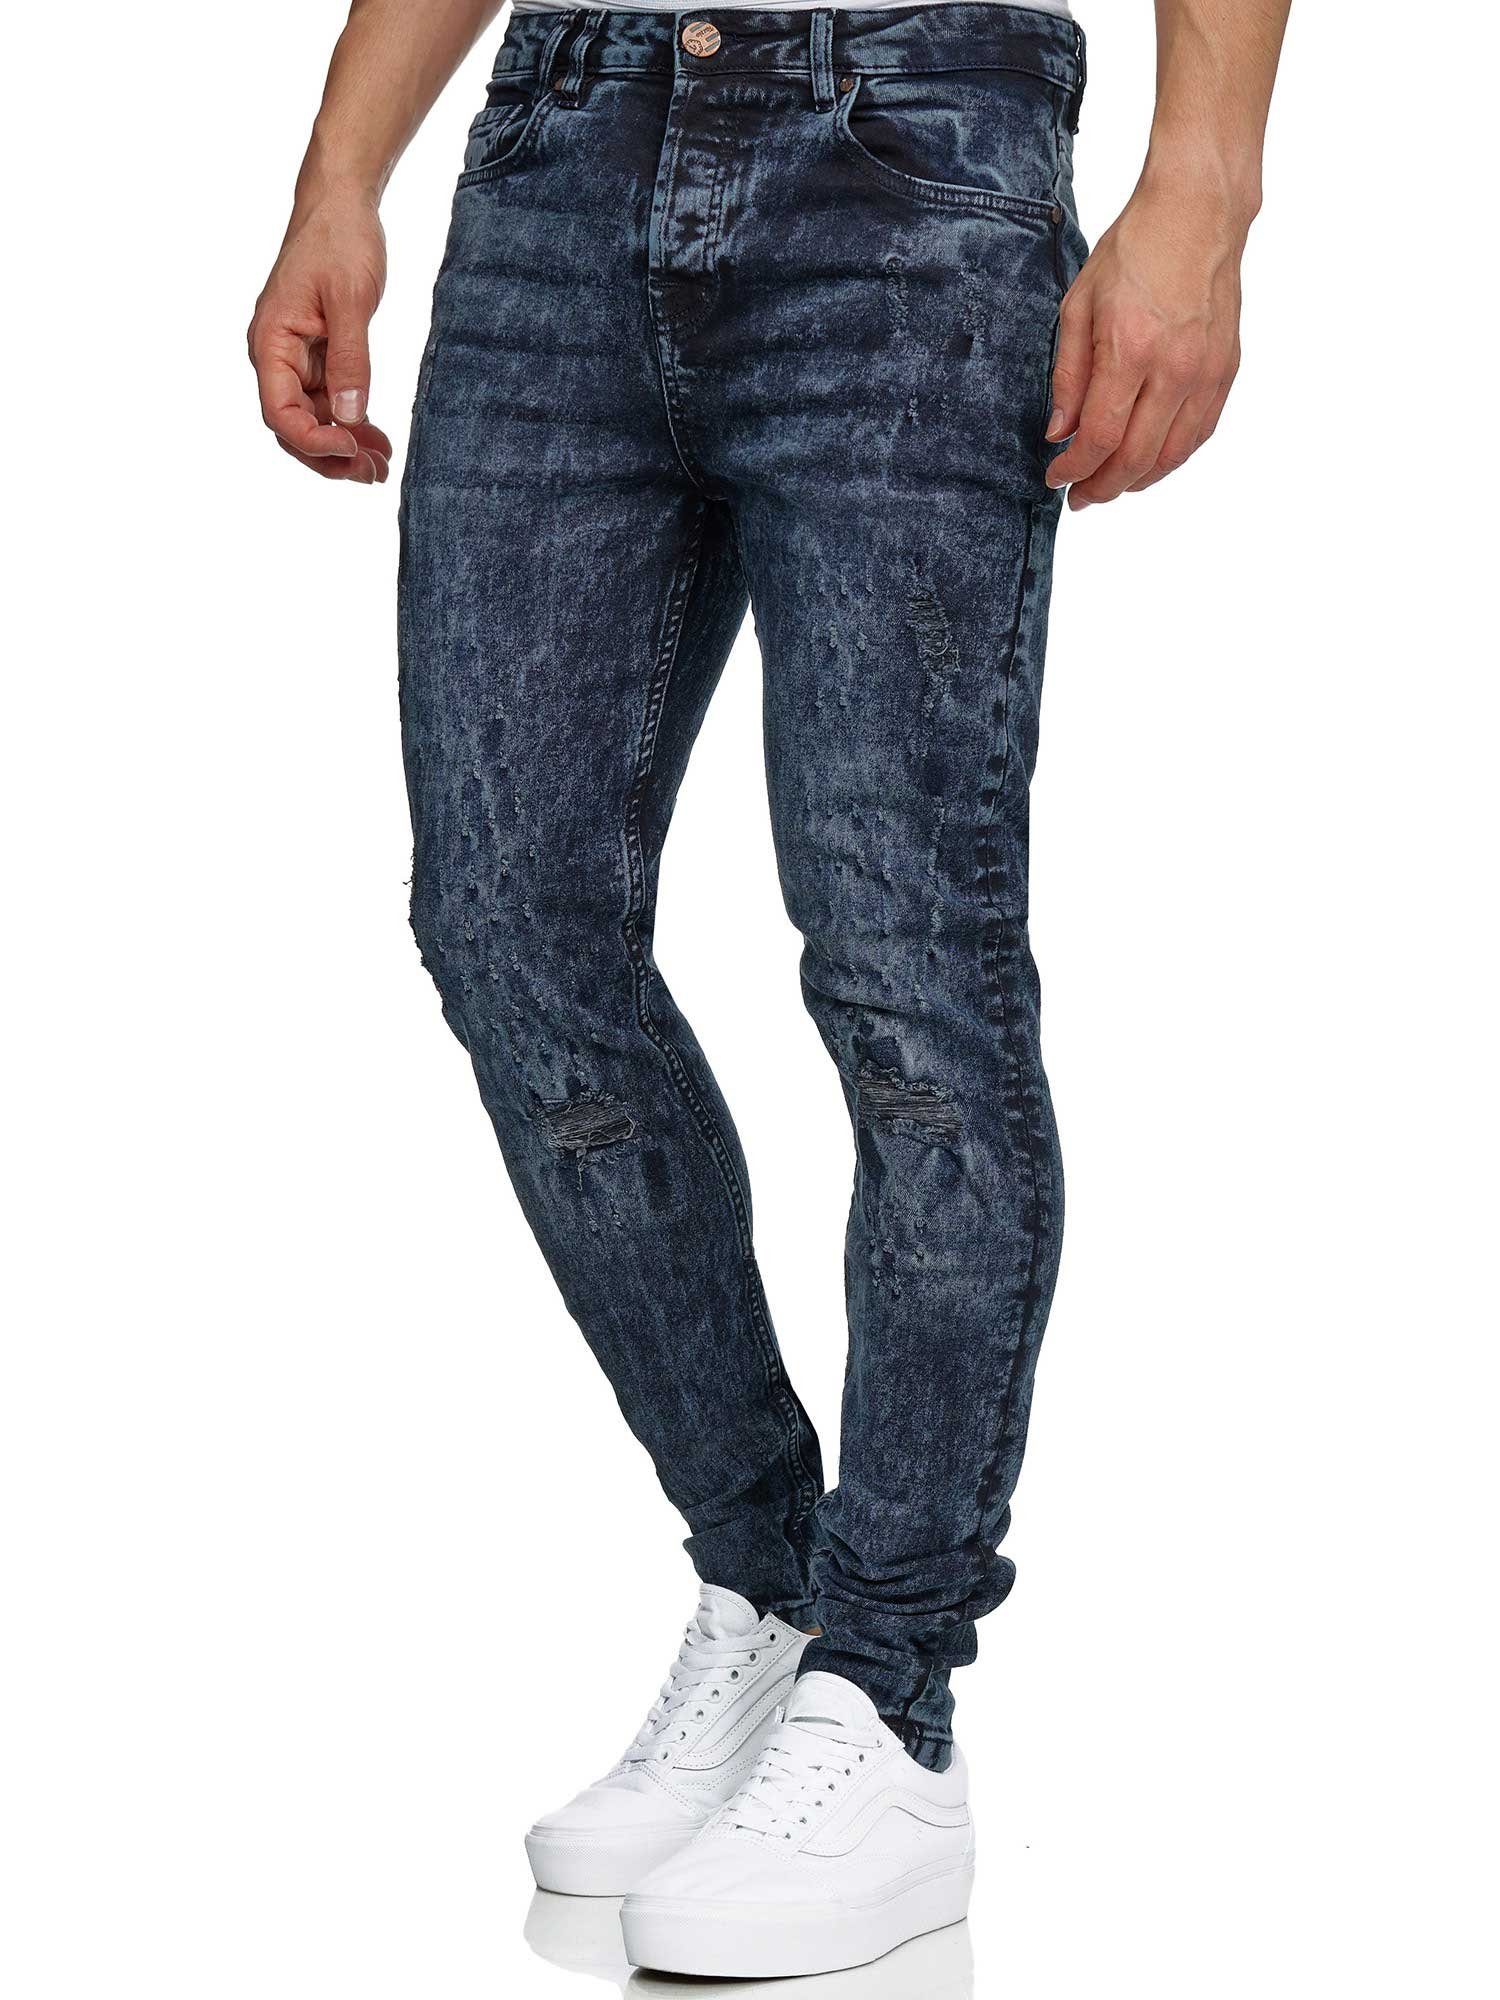 blau Skinny-fit-Jeans im Destroyed-Look Tazzio 17516